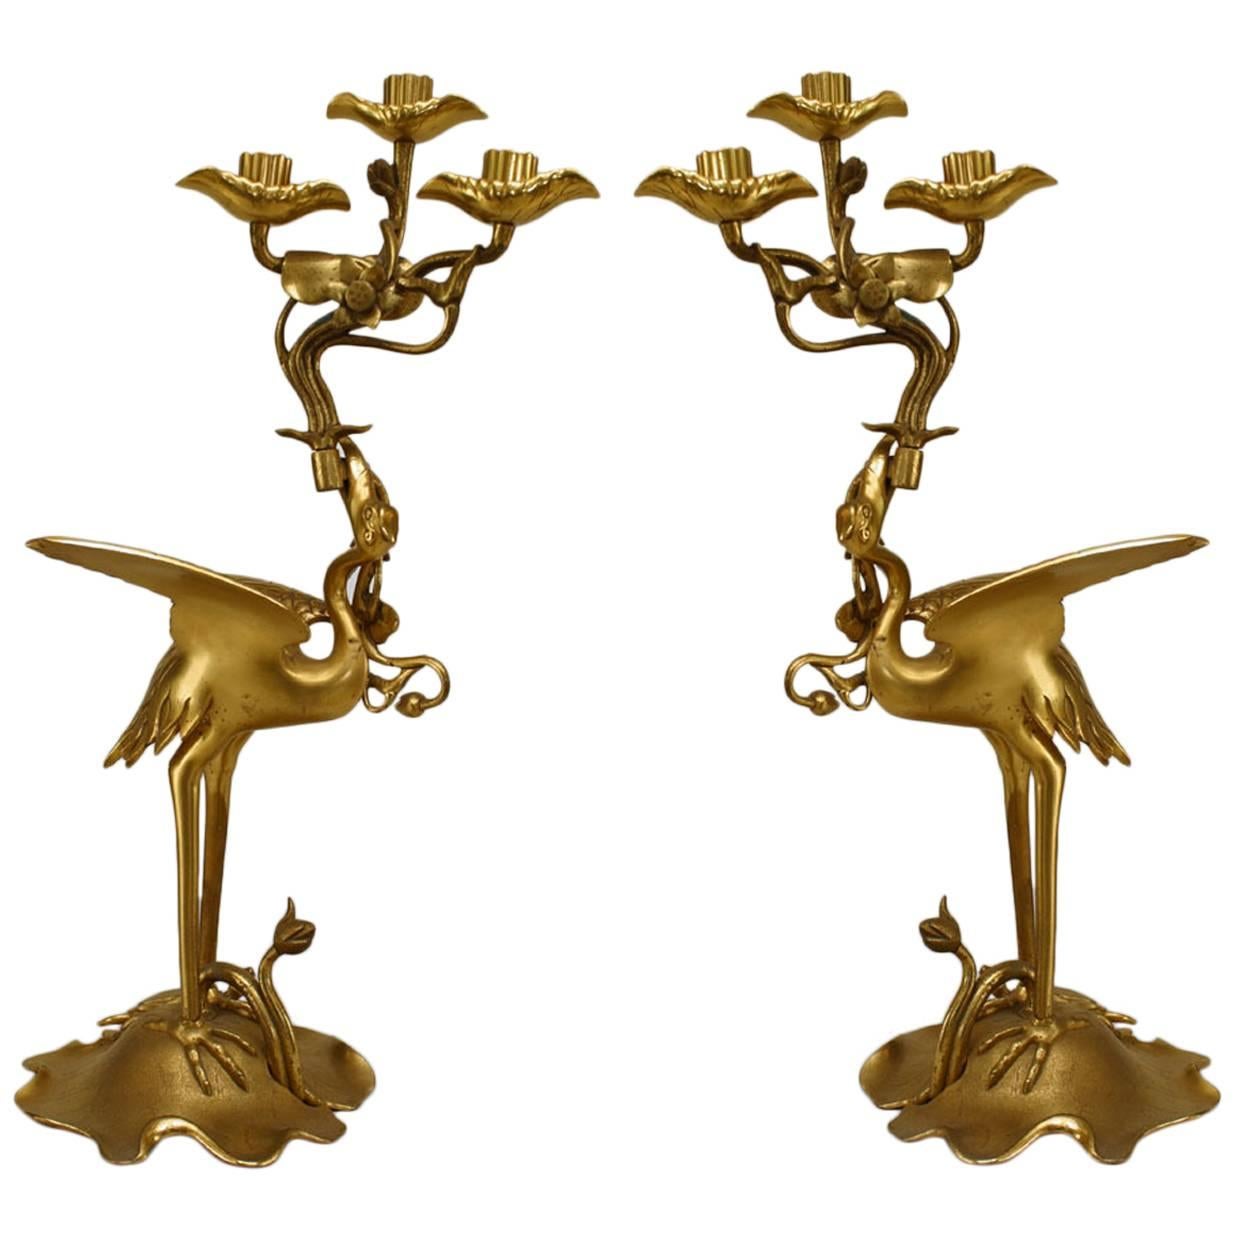 Paire de candélabres Heron de style Régence anglaise en bronze doré